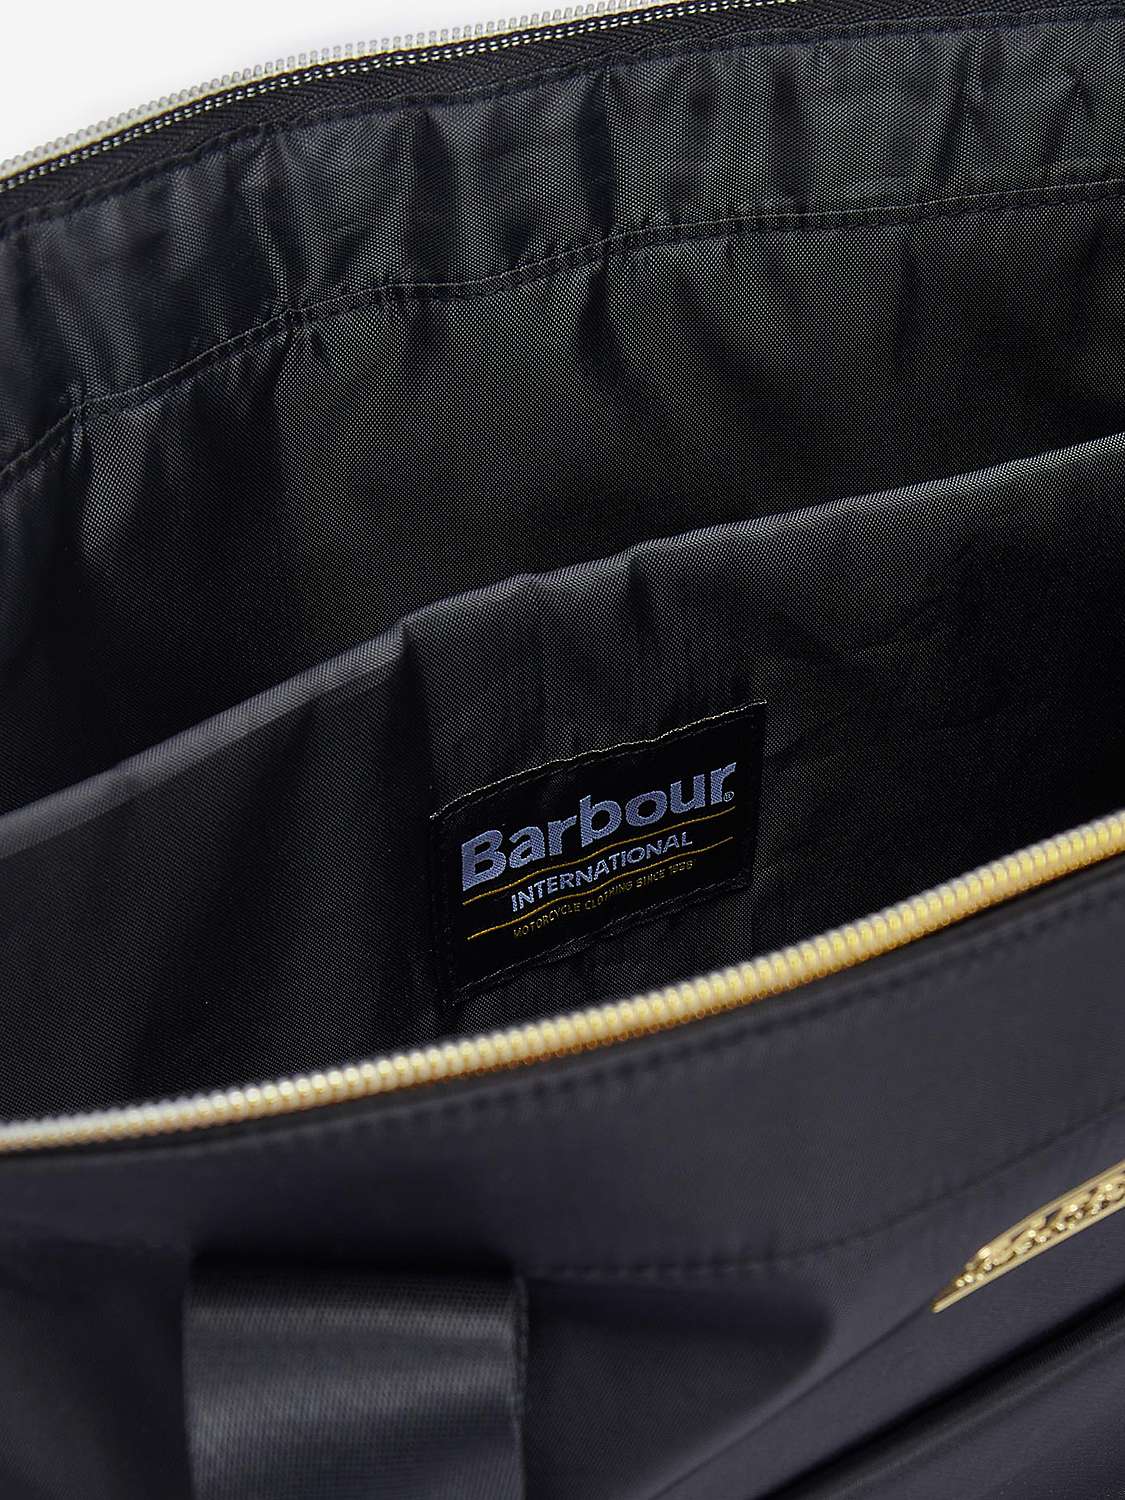 Buy Barbour International Qualify Tote Bag, Black Online at johnlewis.com